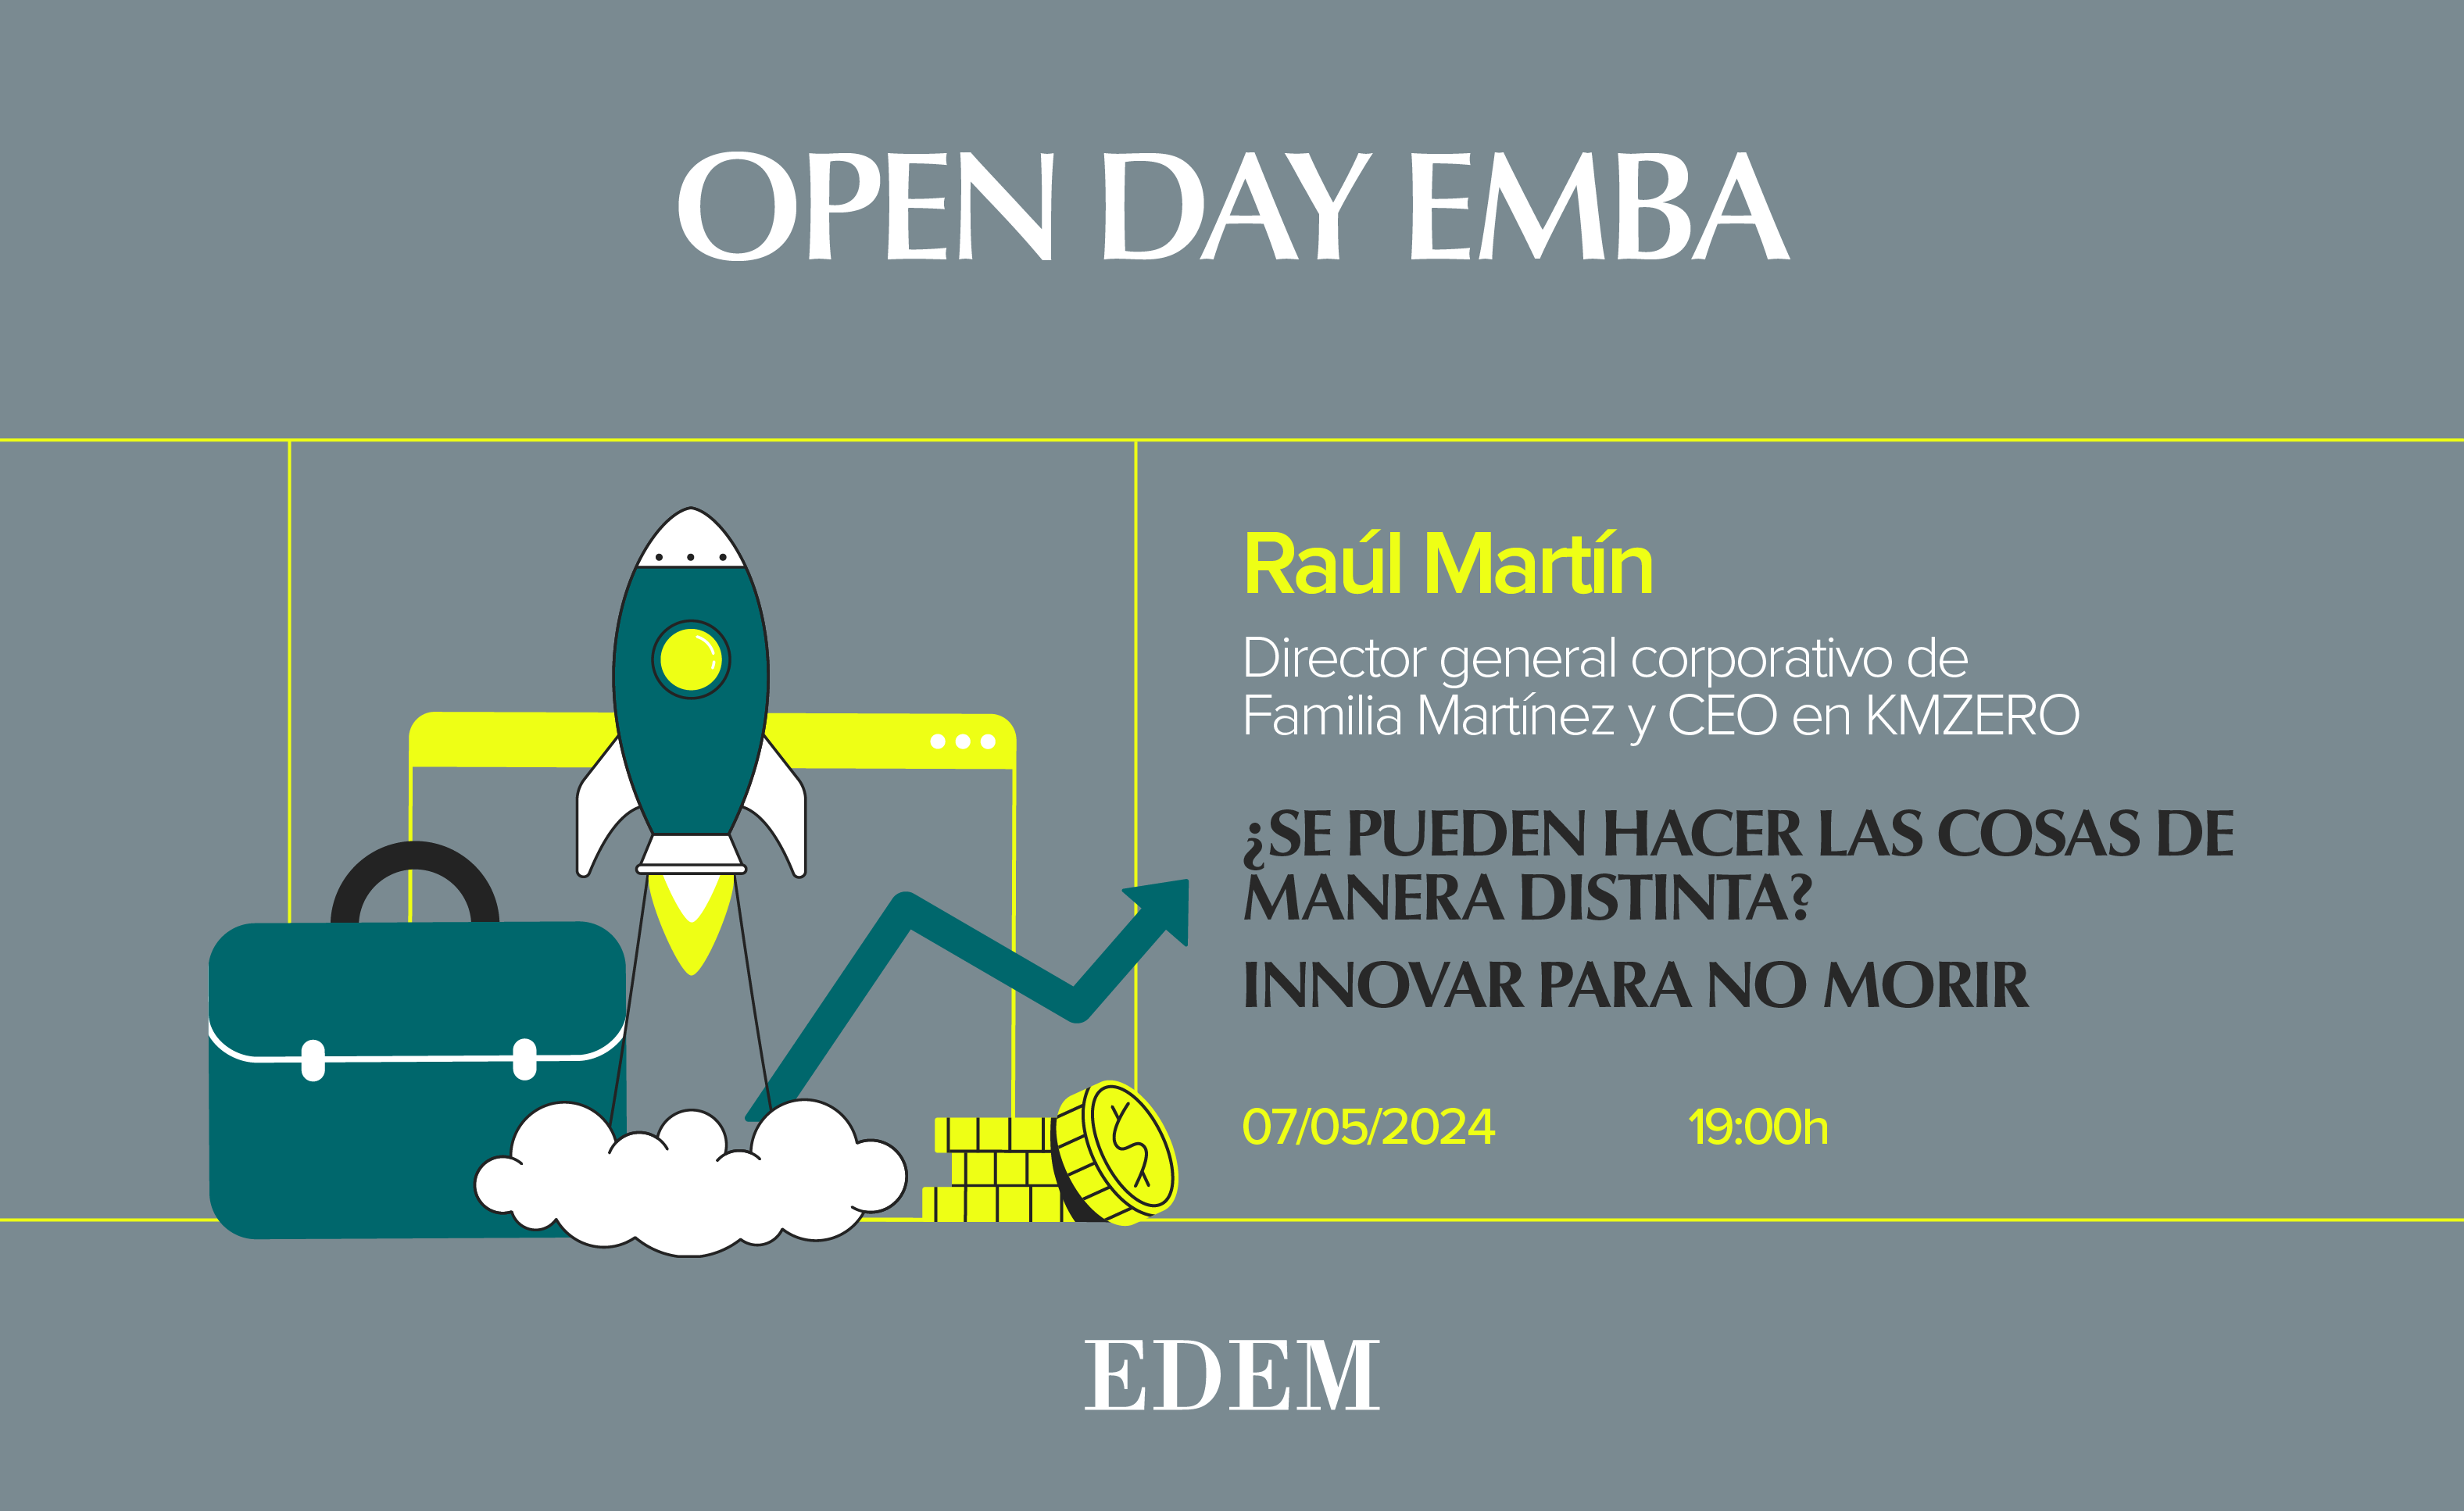 Open Day EMBA. ¿Se pueden hacer las cosas de manera distinta? Innovar para no morir.